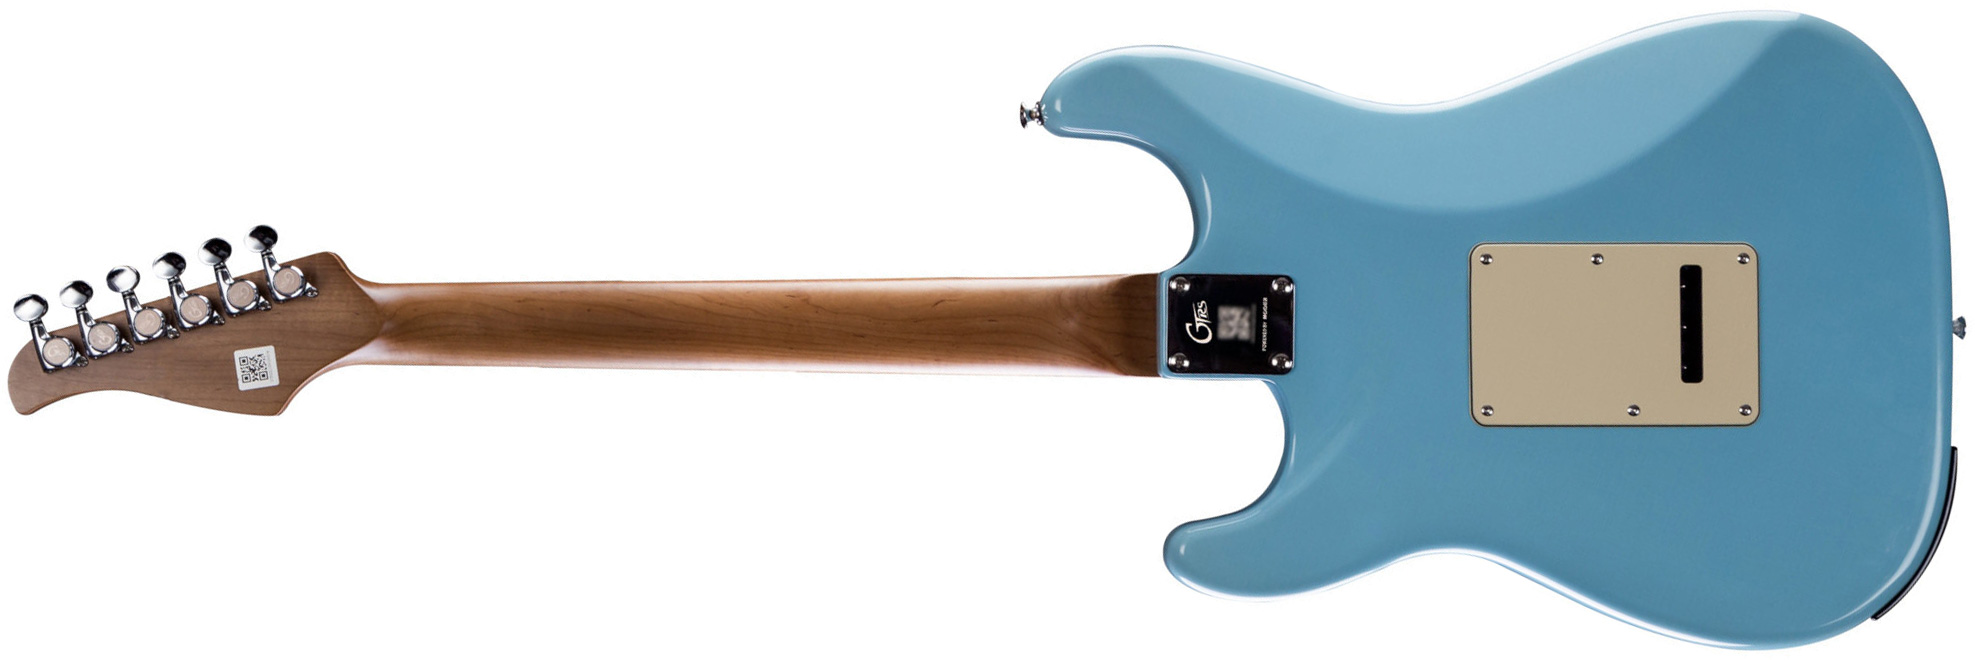 Mooer Gtrs P800 Pro Intelligent Guitar Hss Trem Rw - Tiffany Blue - Guitare Électrique ModÉlisation & Midi - Variation 1